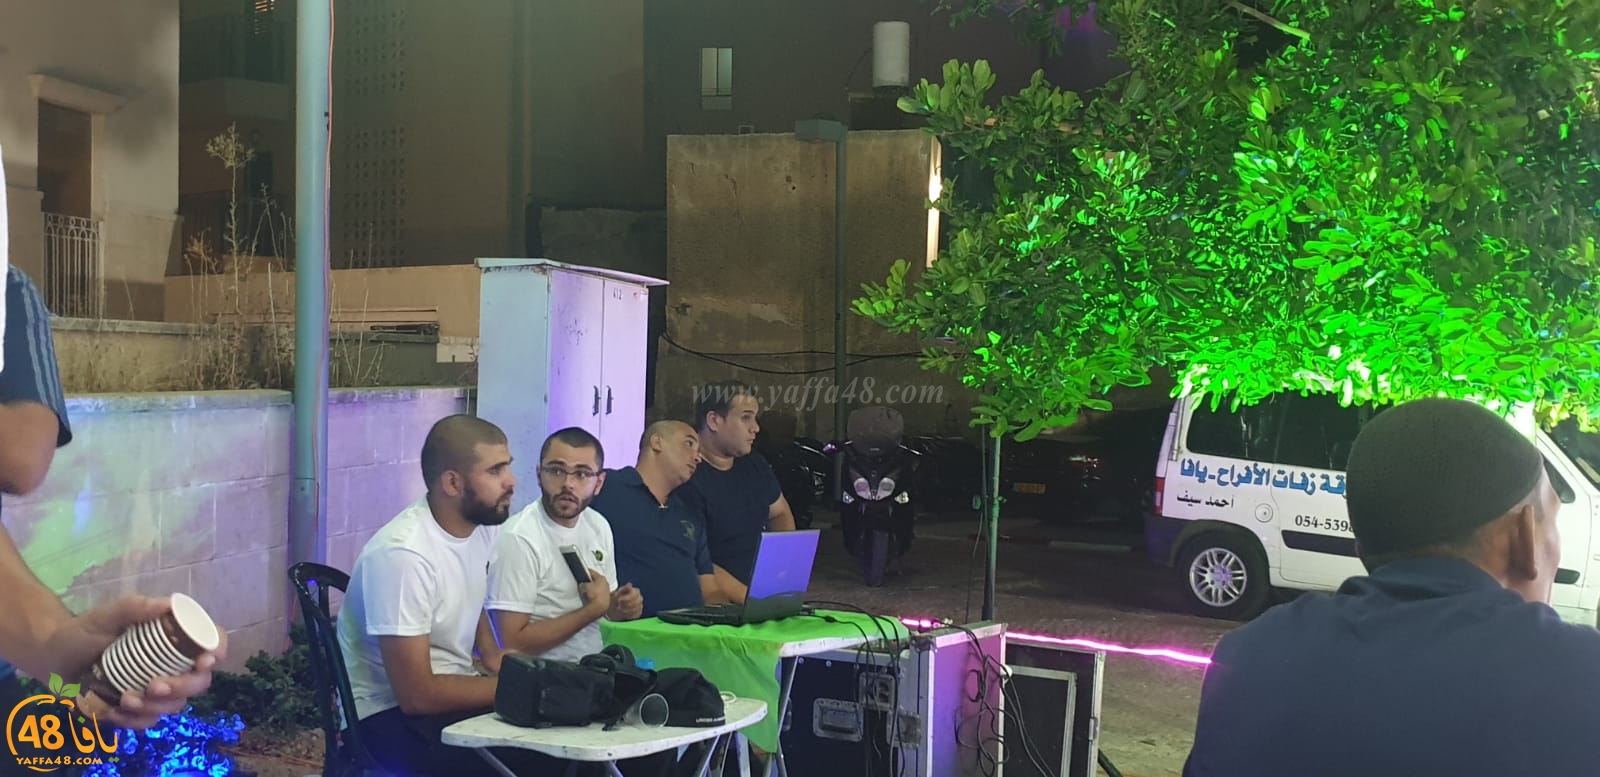  بالصور : خيمة الهدى تنظم أمسية دعوية في ضيافة عائلة أبو خليفة بيافا